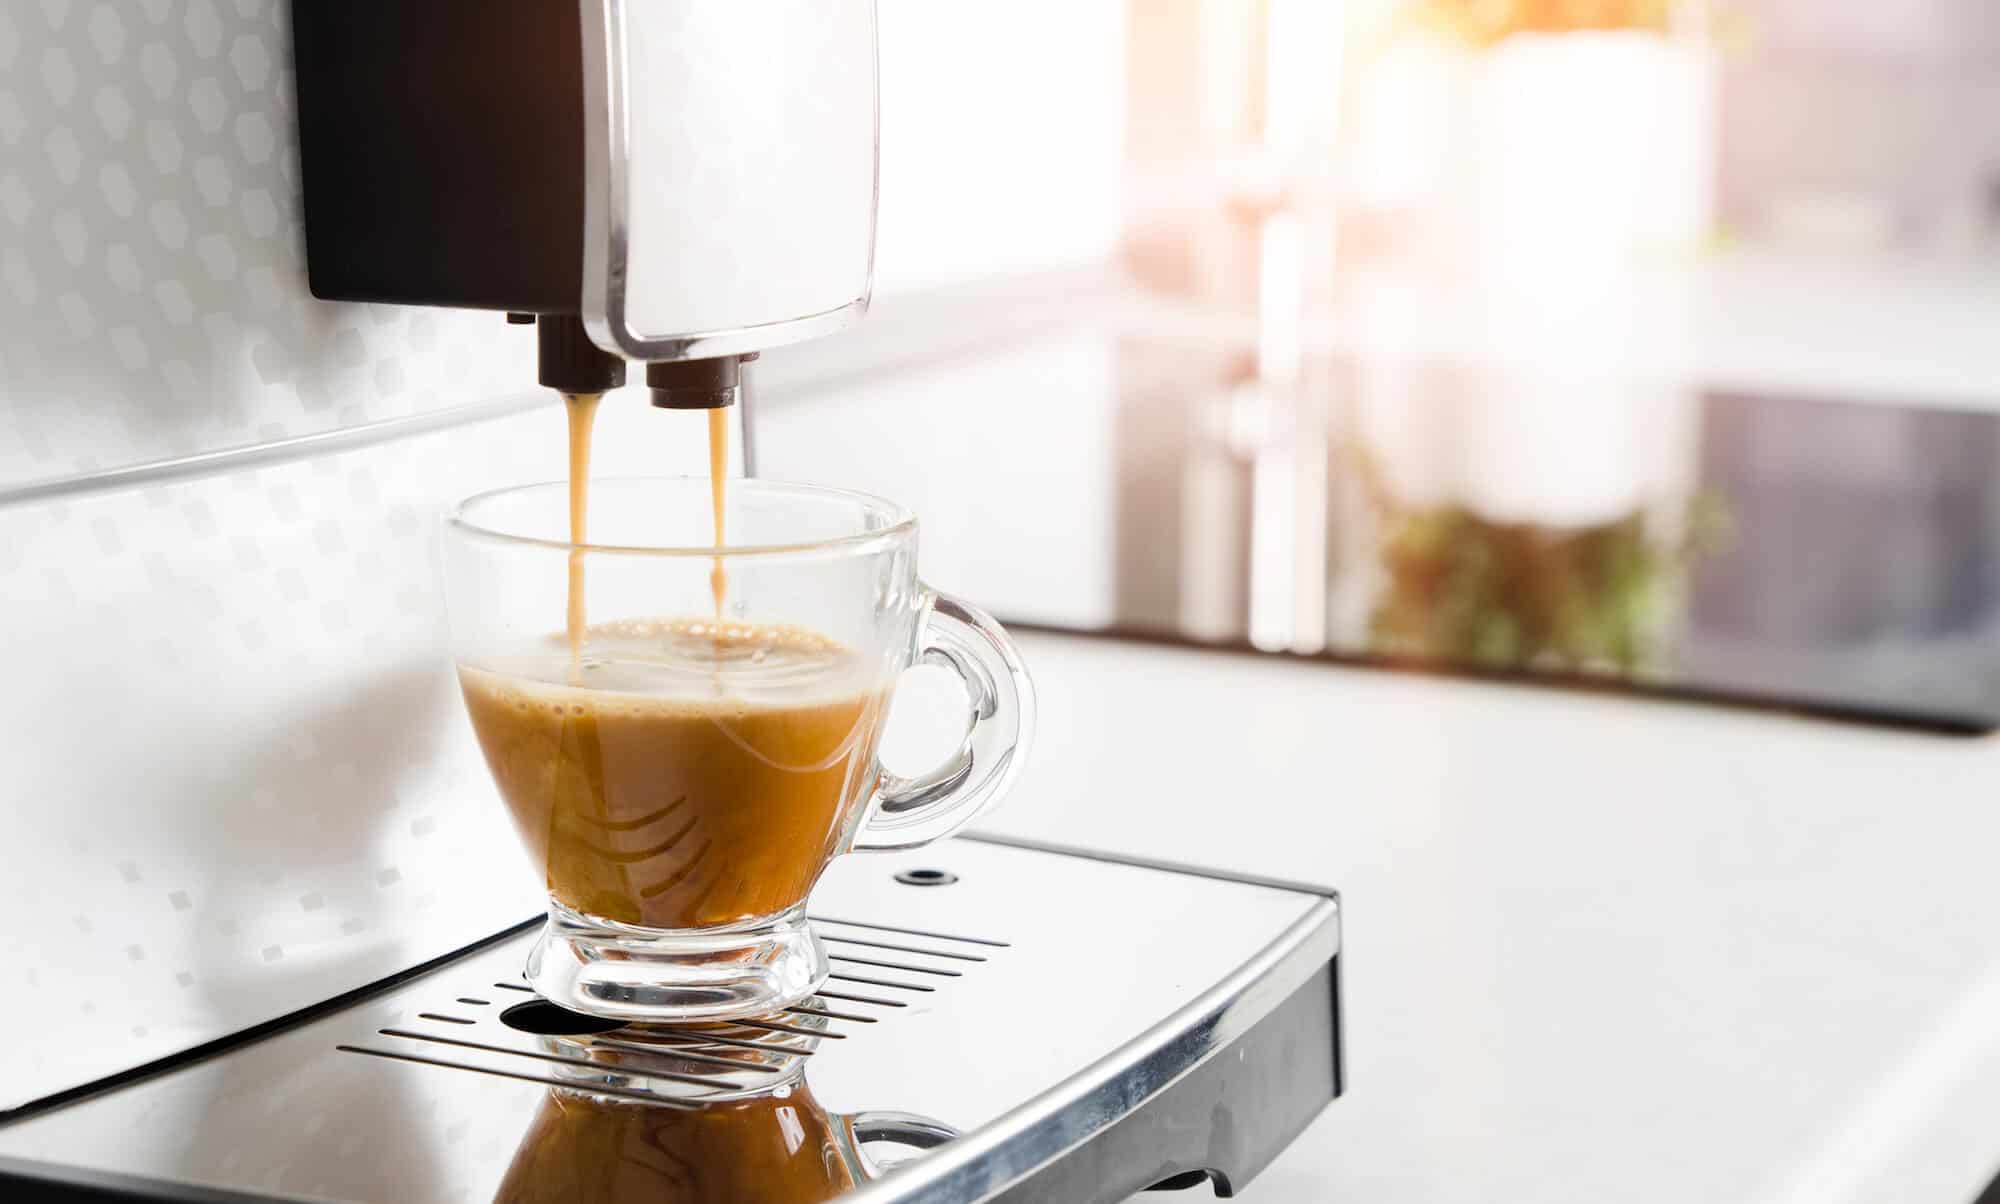 Super-Automatic-Espresso-Machine-in-action